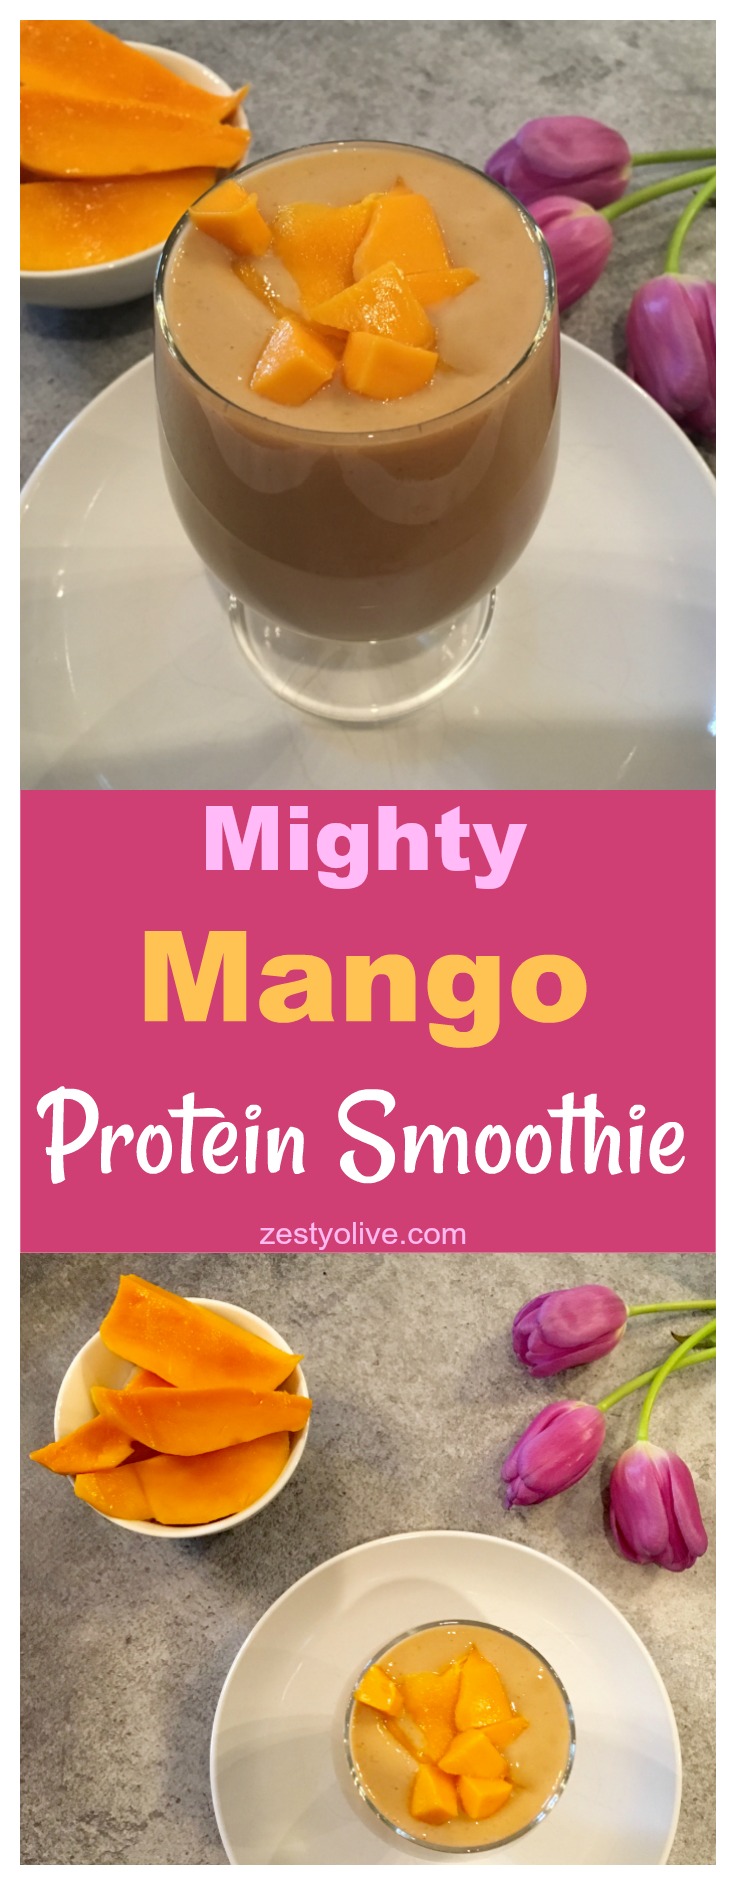 Mighty Mango Protein Smoothie